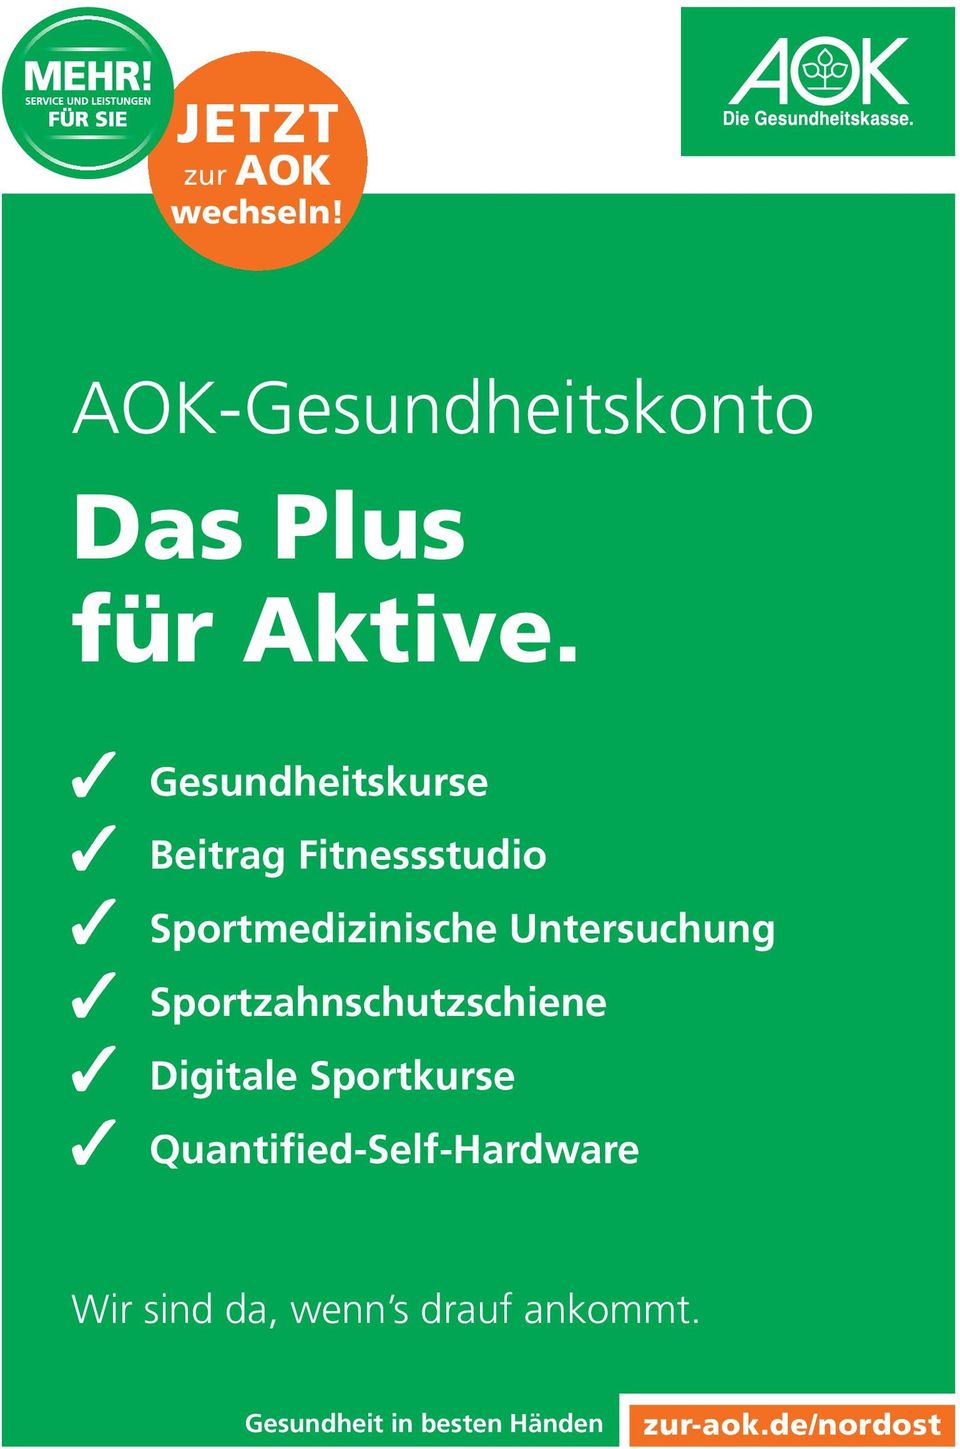 Sportzahnschutzschiene Digitale Sportkurse Quantified-Self-Hardware Wir